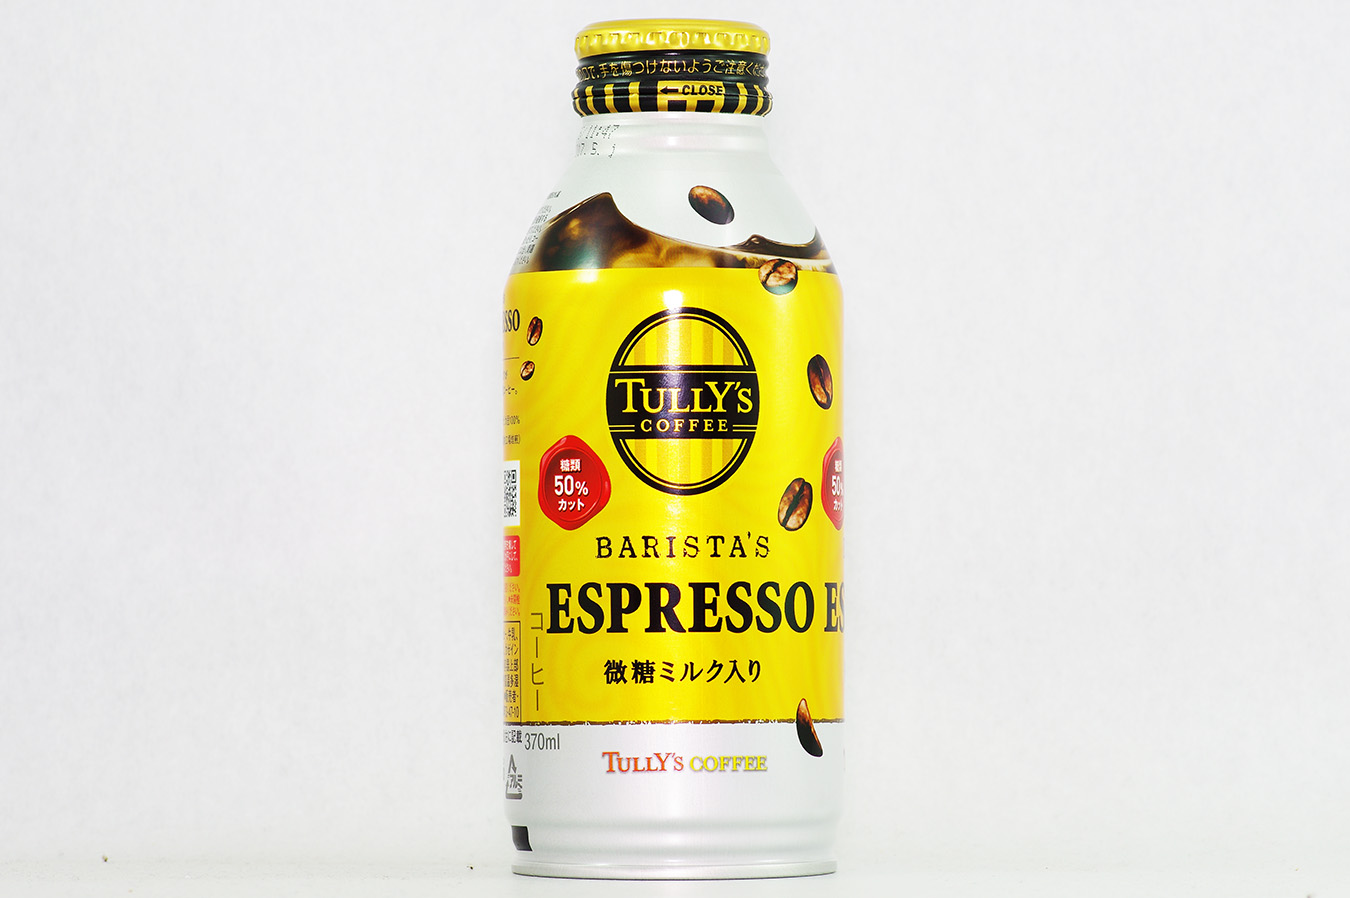 TULLY'S COFFEE BARISTA'S ESPRESSO 2016年5月